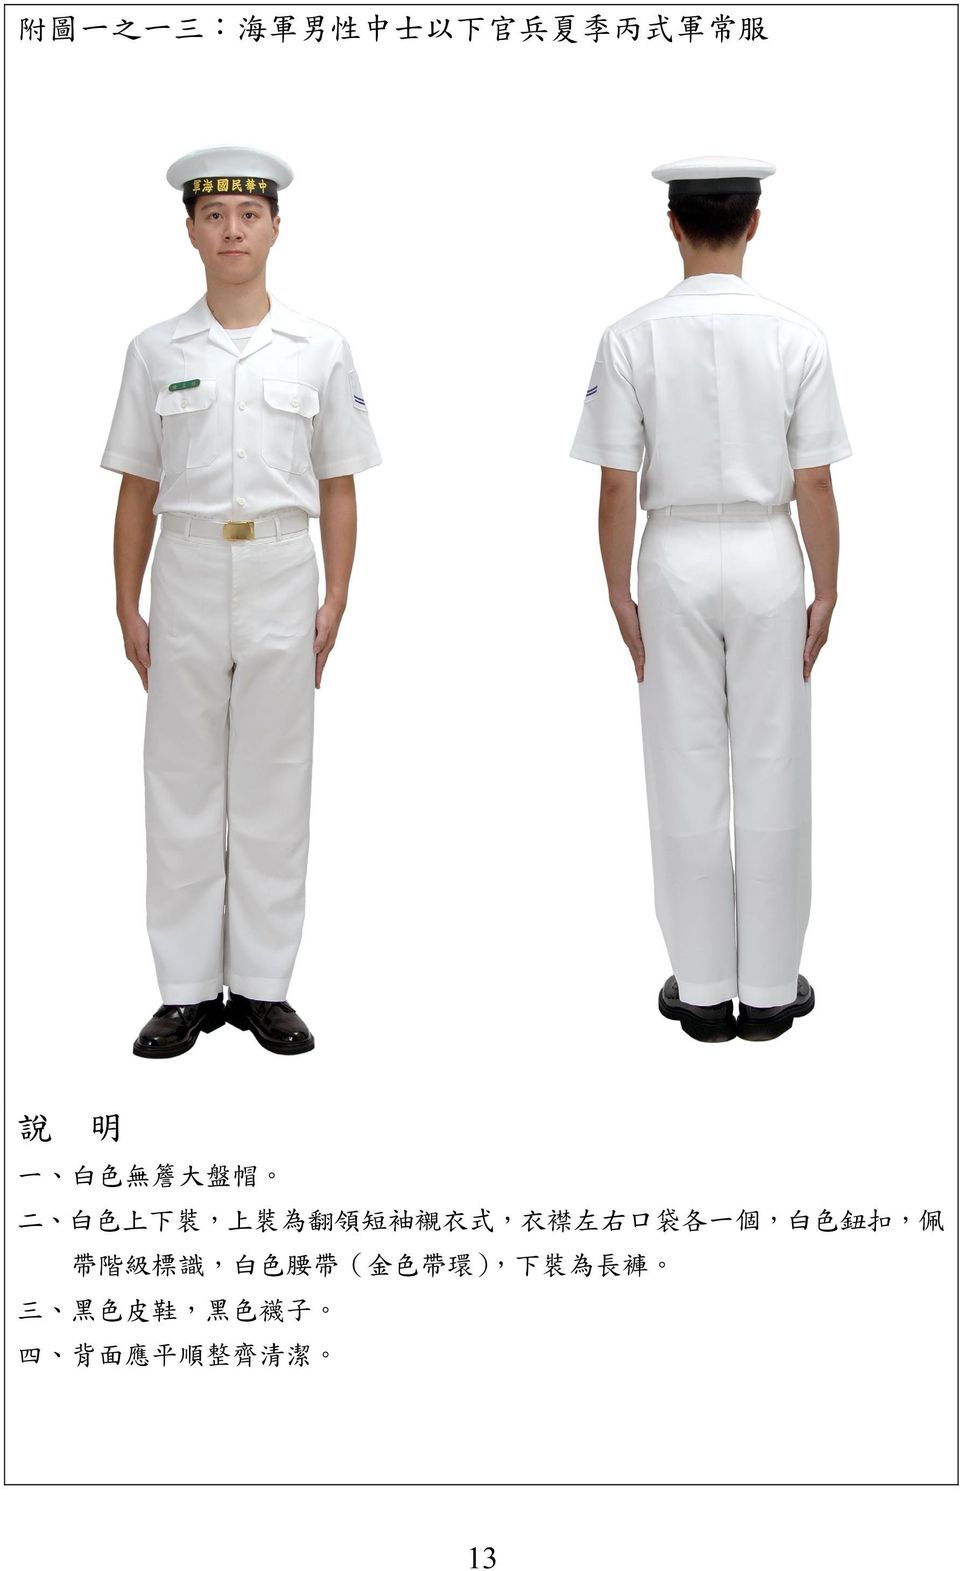 式, 衣 襟 左 右 口 袋 各 一 個, 白 色 鈕 扣, 佩 帶 階 級 標 識, 白 色